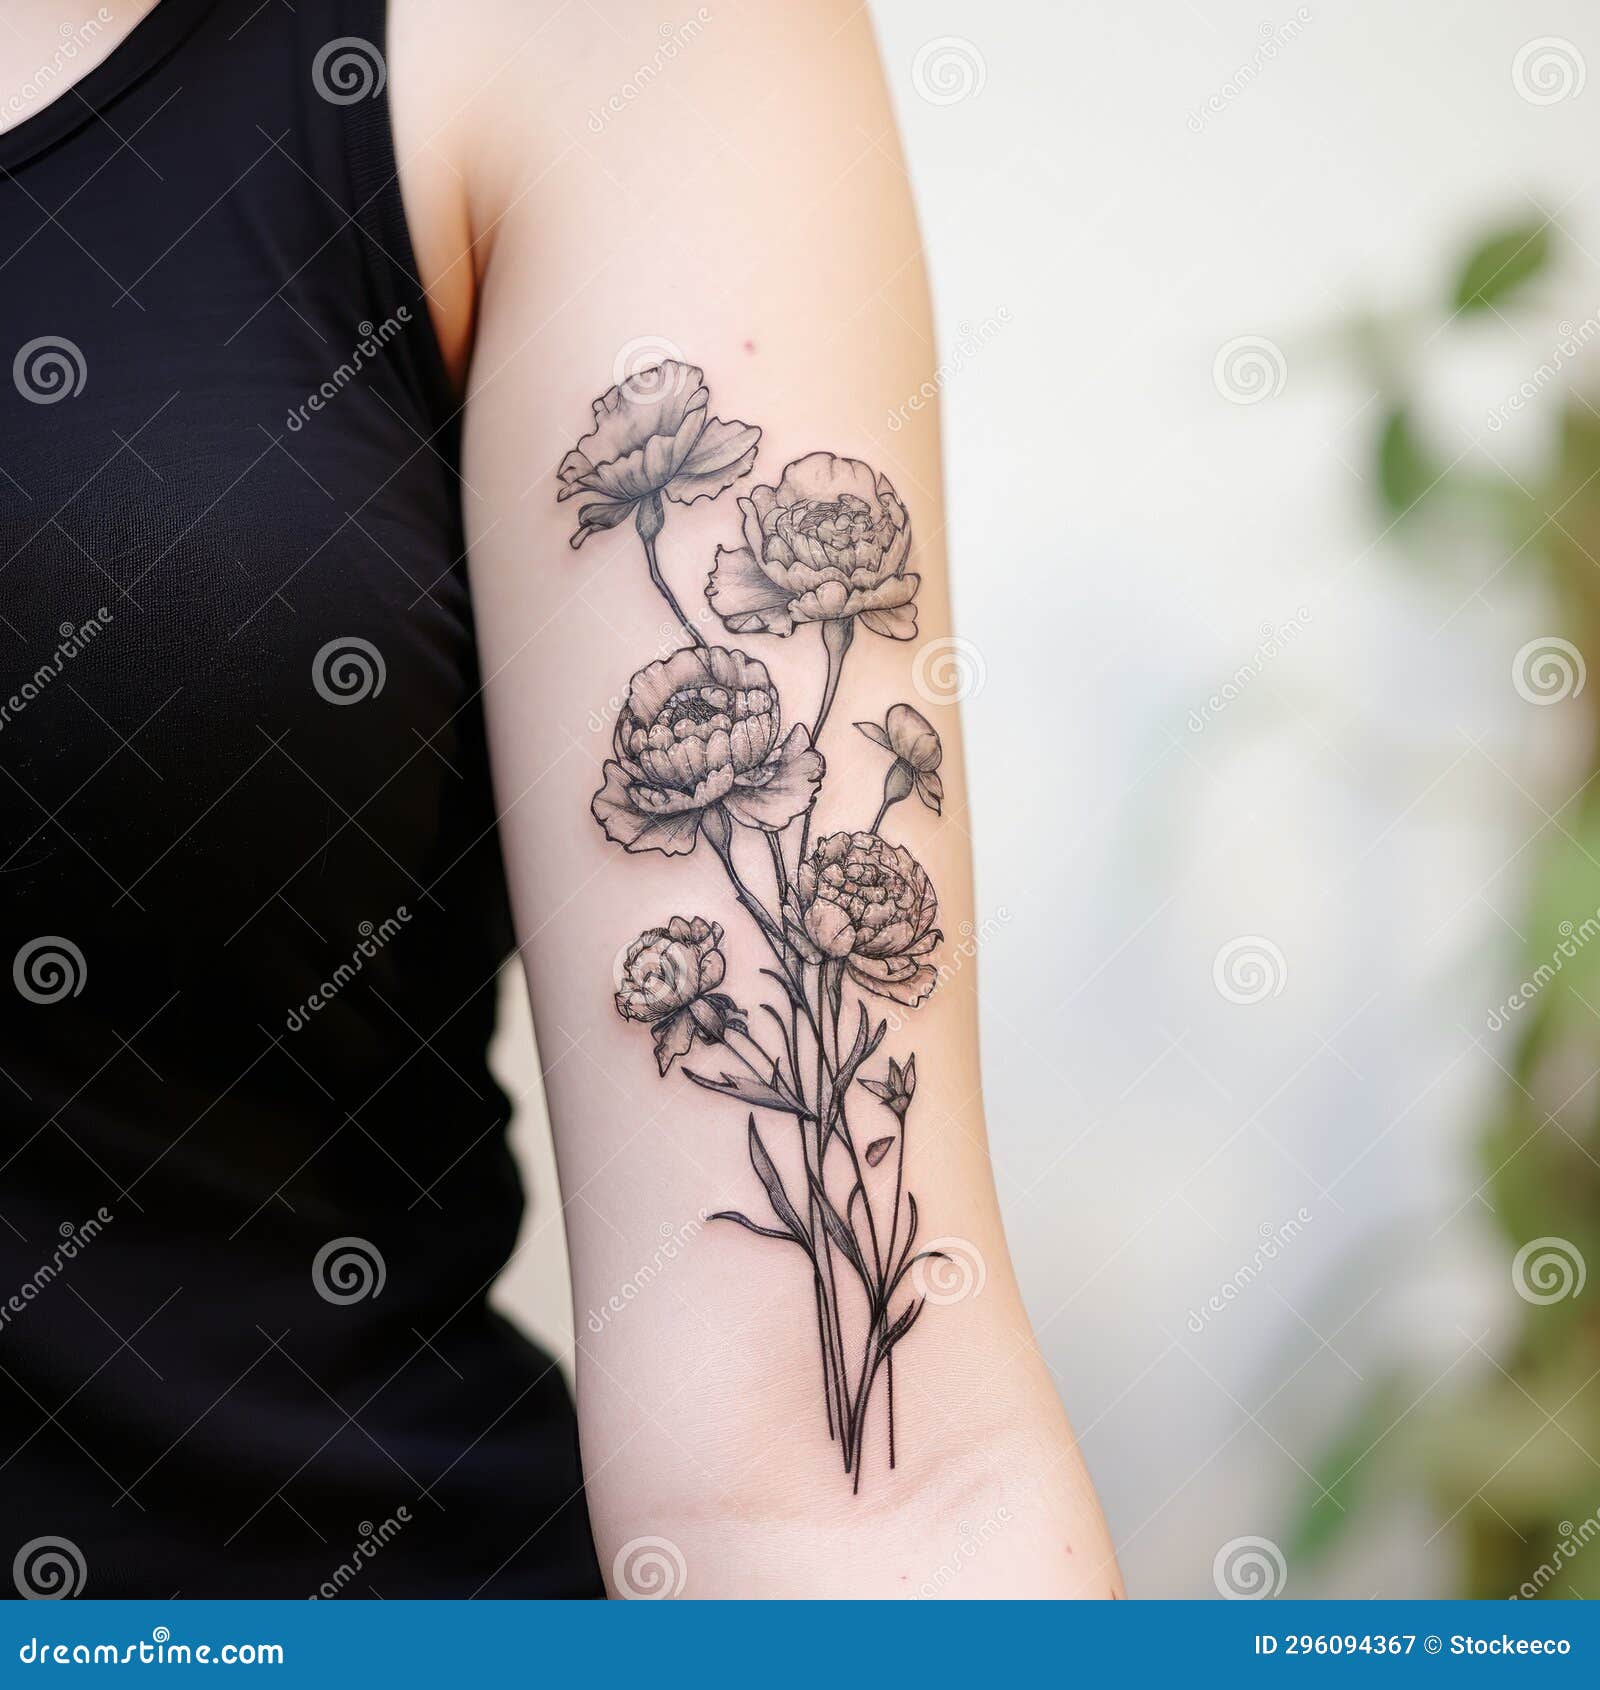 CARNATION TATTOO | Carnation tattoo, Purple tattoos, Discreet tattoos